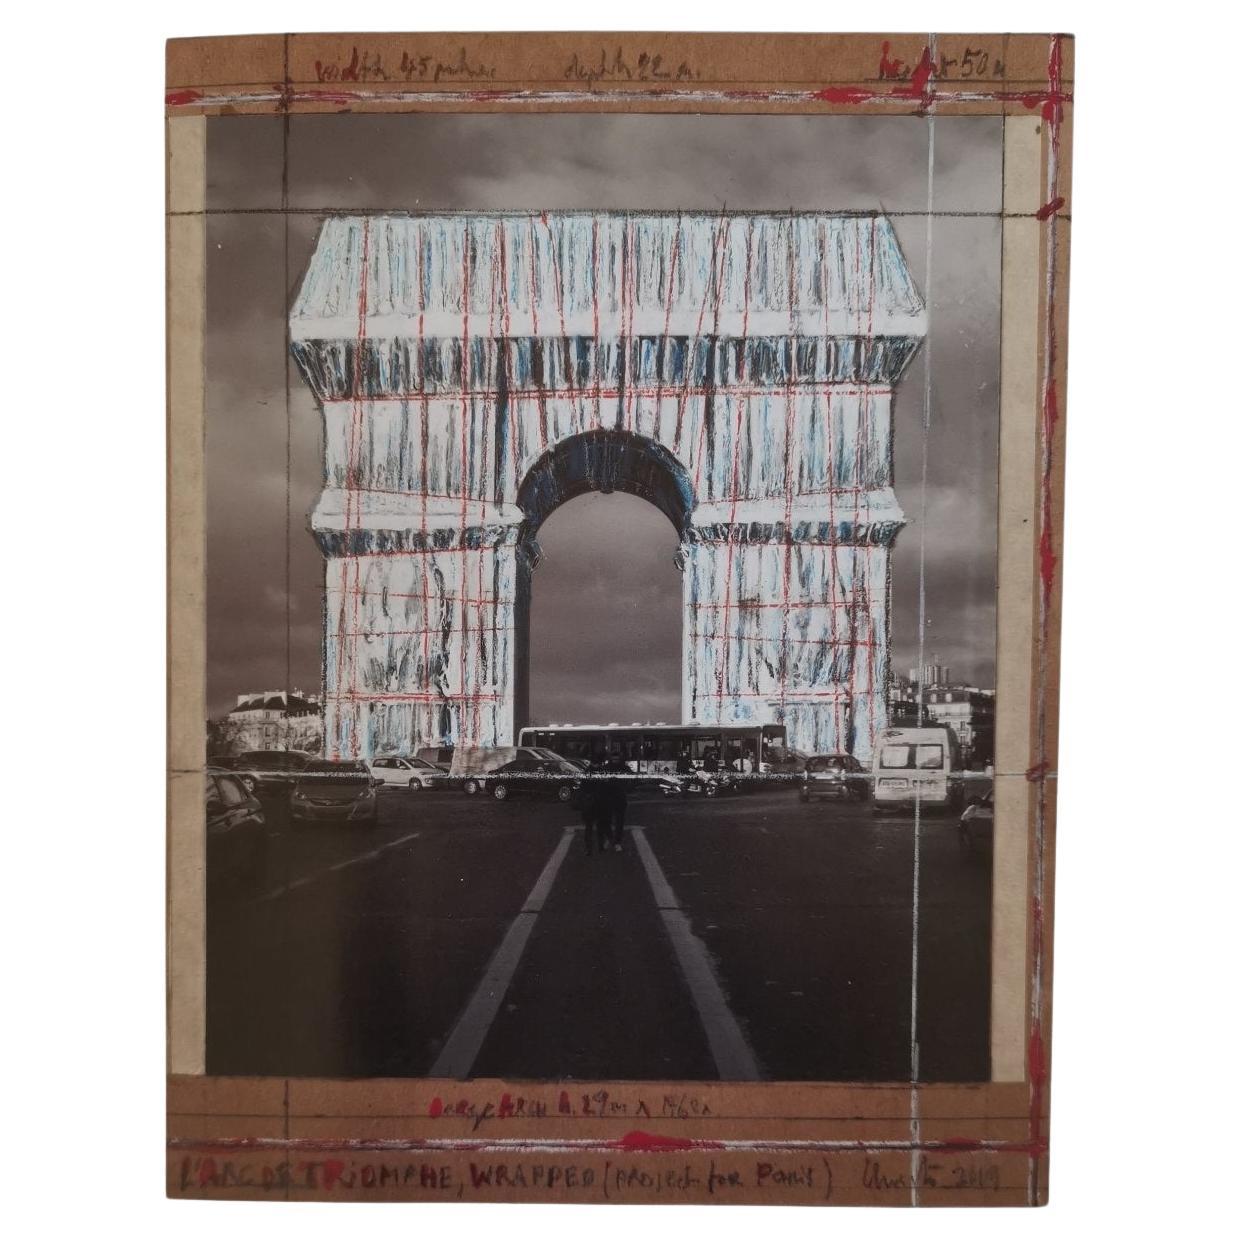 Druck von L'Arc de Triomphe verpackt Projekt durch den Künstler Christo Javacheff unterzeichnet.
Blatt: 45 x 35 cm
USA 2019.